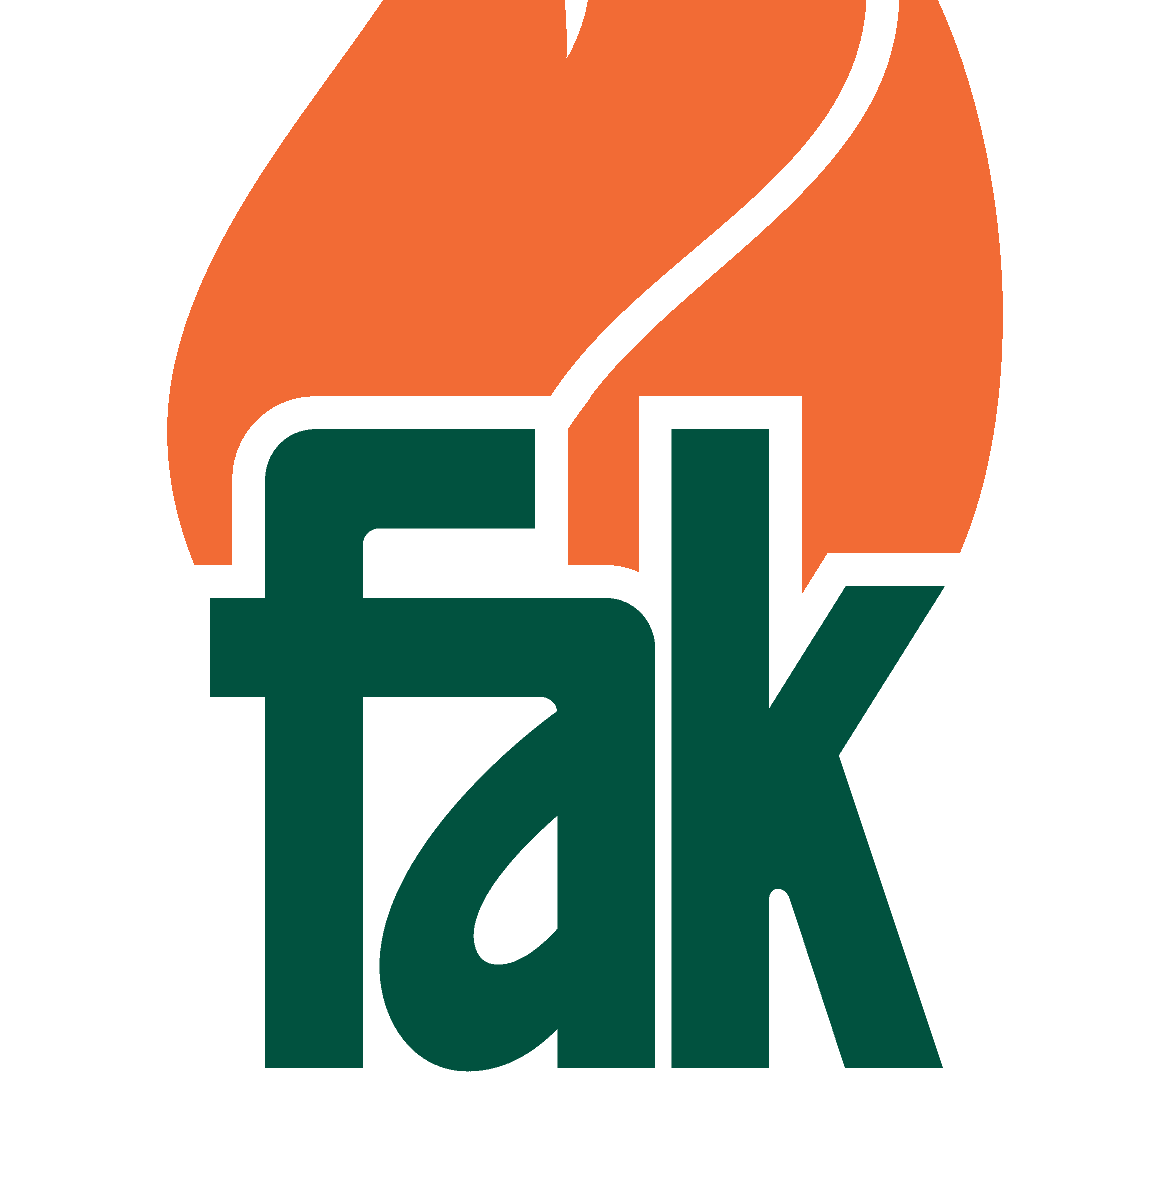 FAK (Federasie van Afrikaanse Kultuurvereniginge)